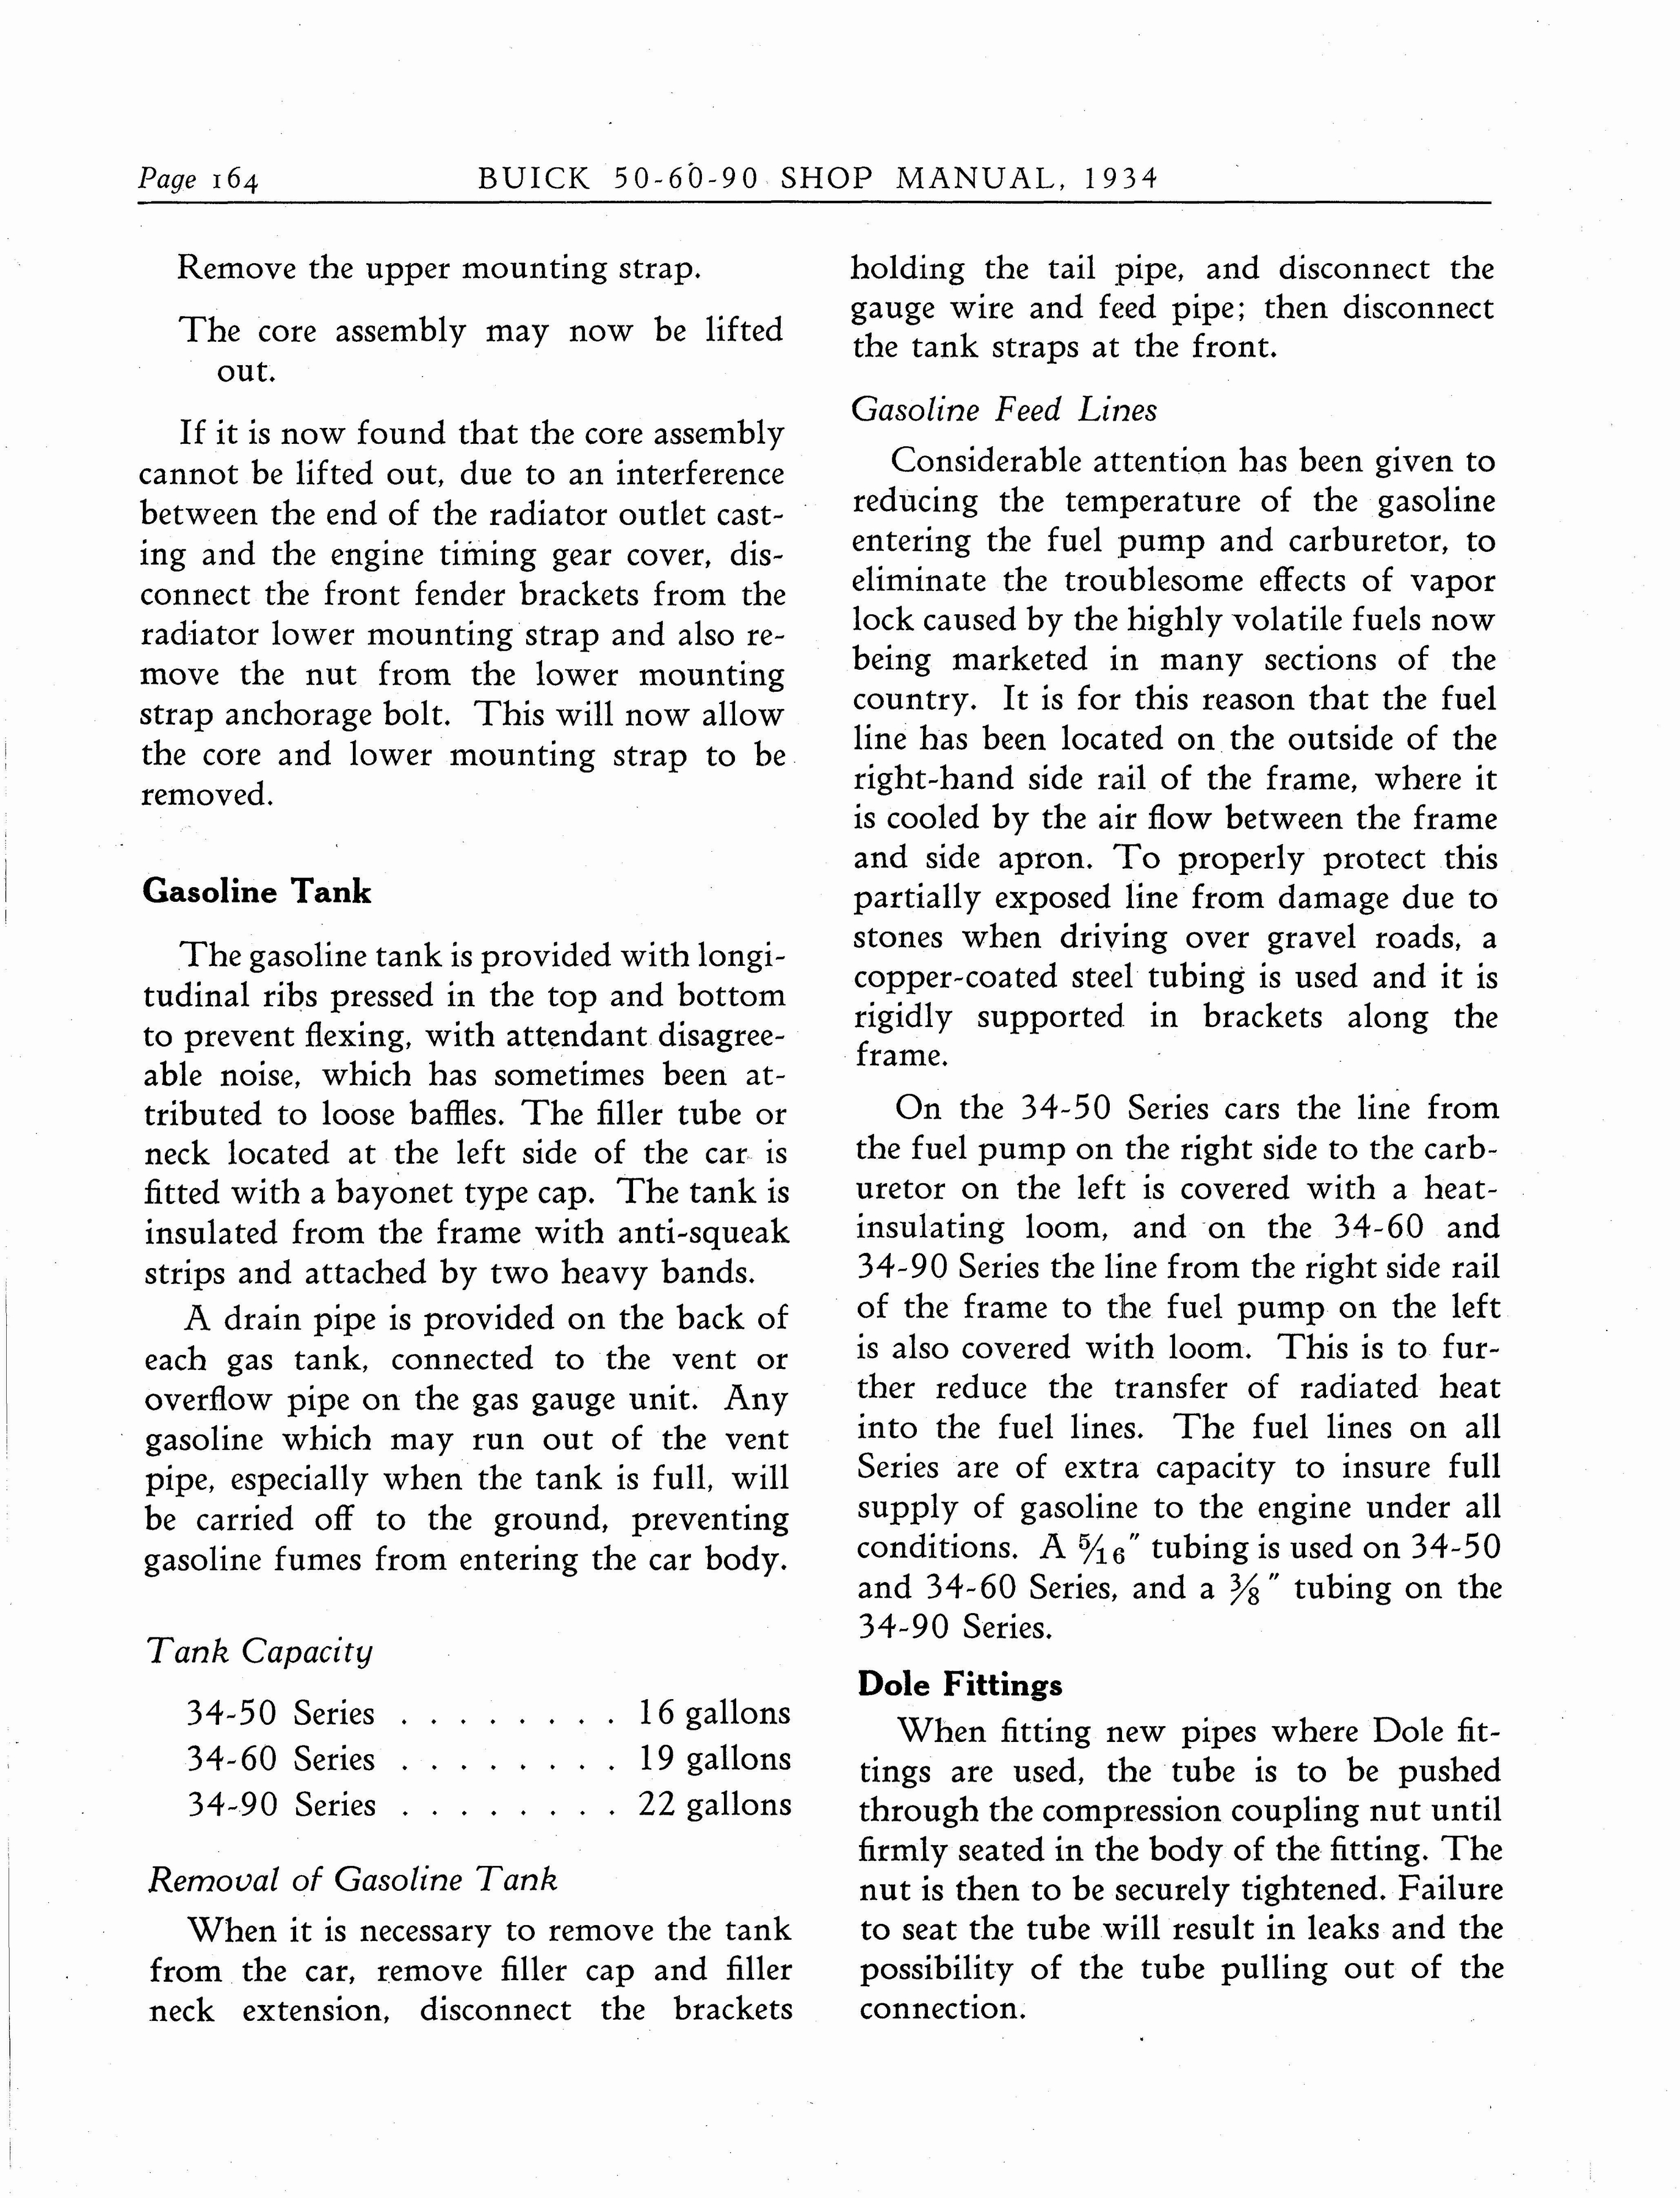 n_1934 Buick Series 50-60-90 Shop Manual_Page_165.jpg